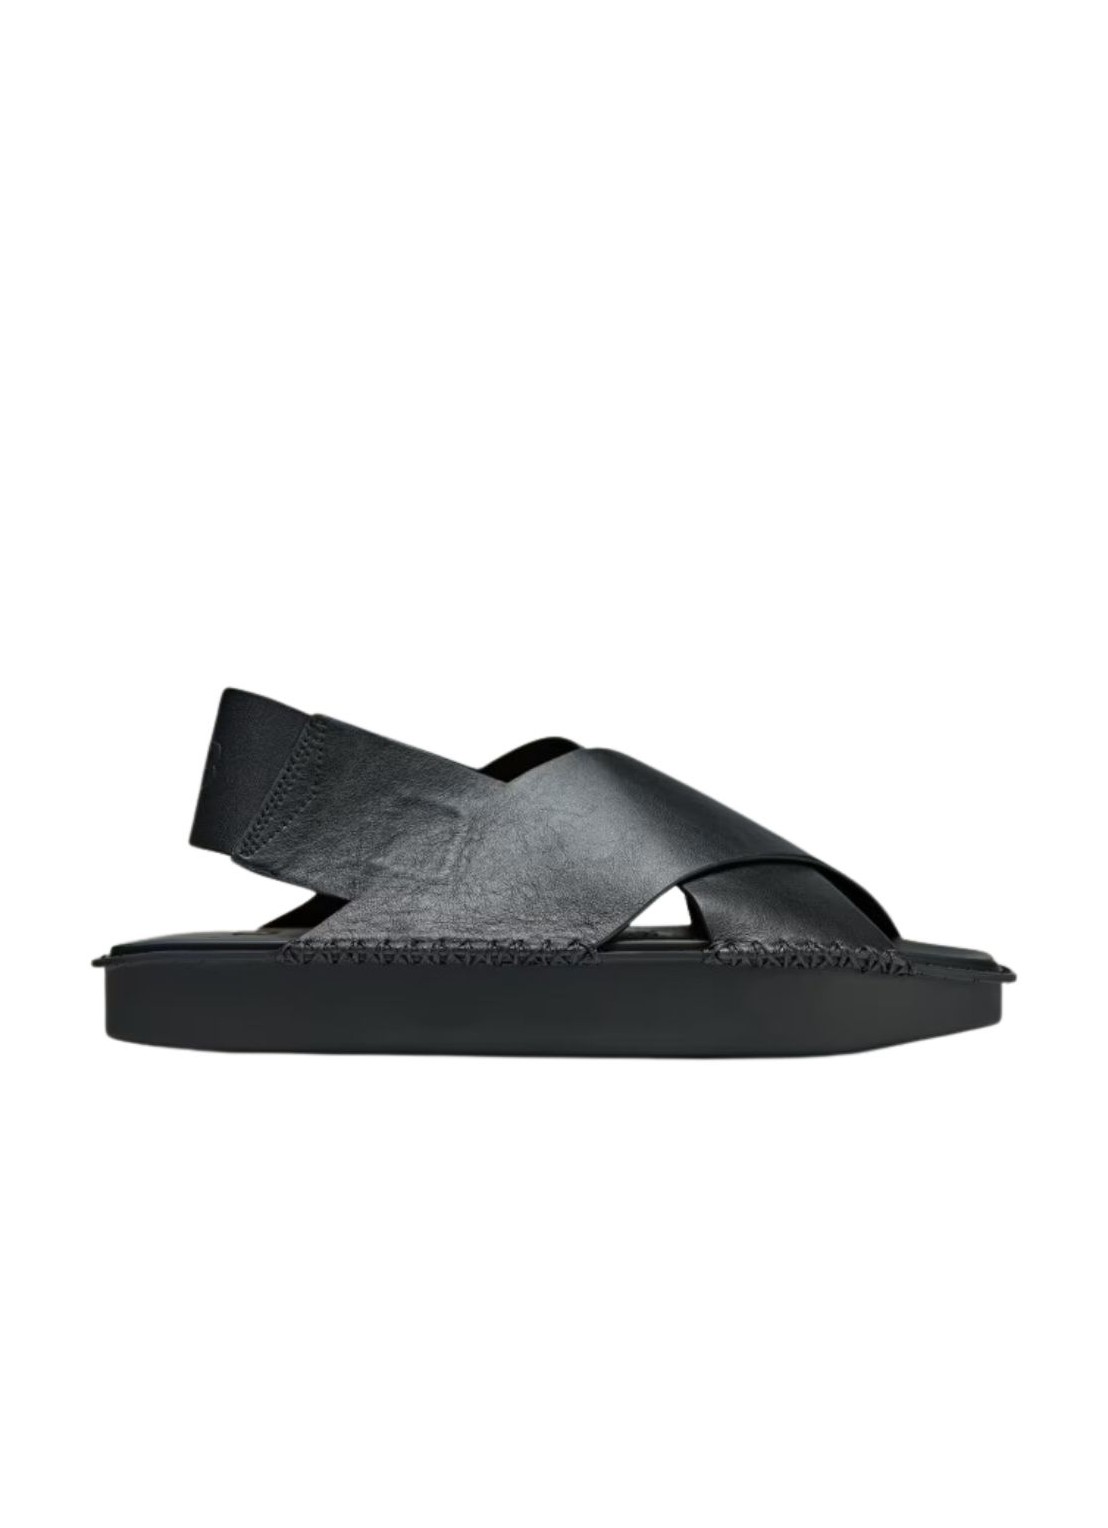 Sandalia y3 sandal many-3 sandal - ig4052 black black black talla 46
 